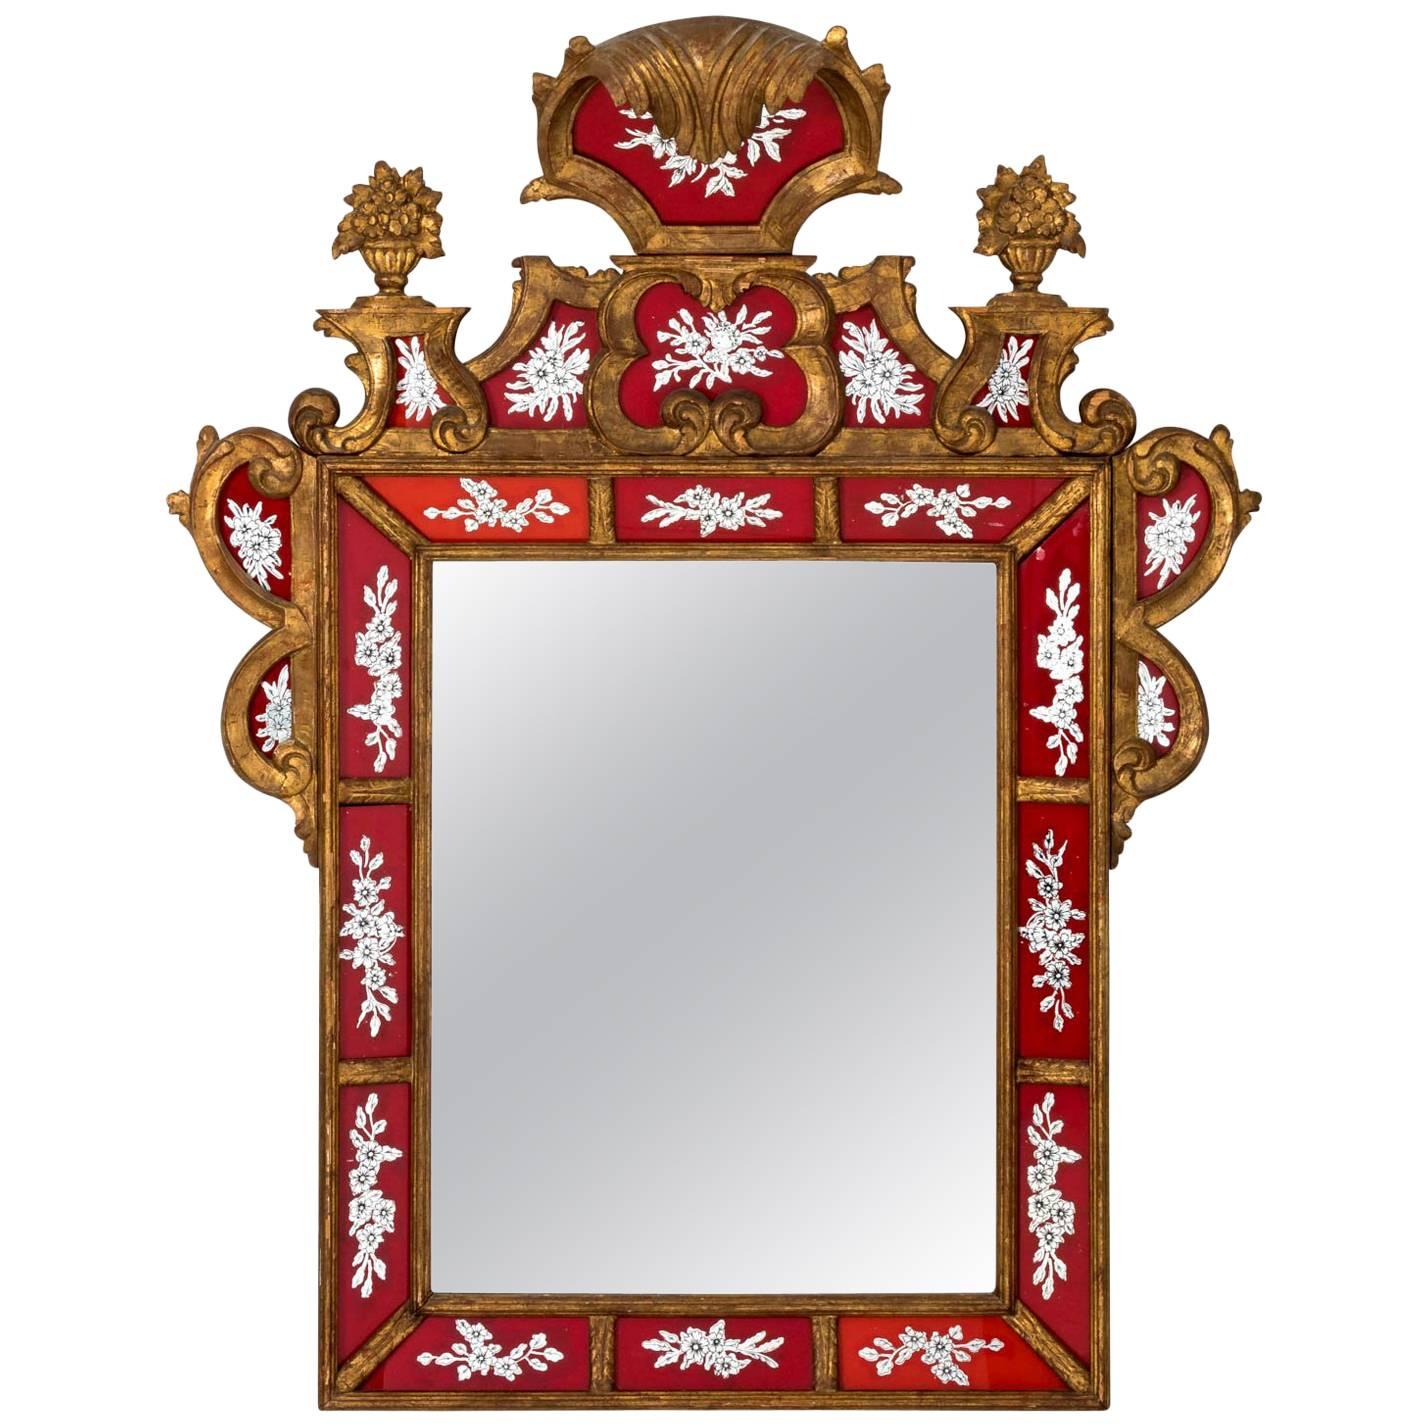 Venetian Èglomisé Painted Mirror